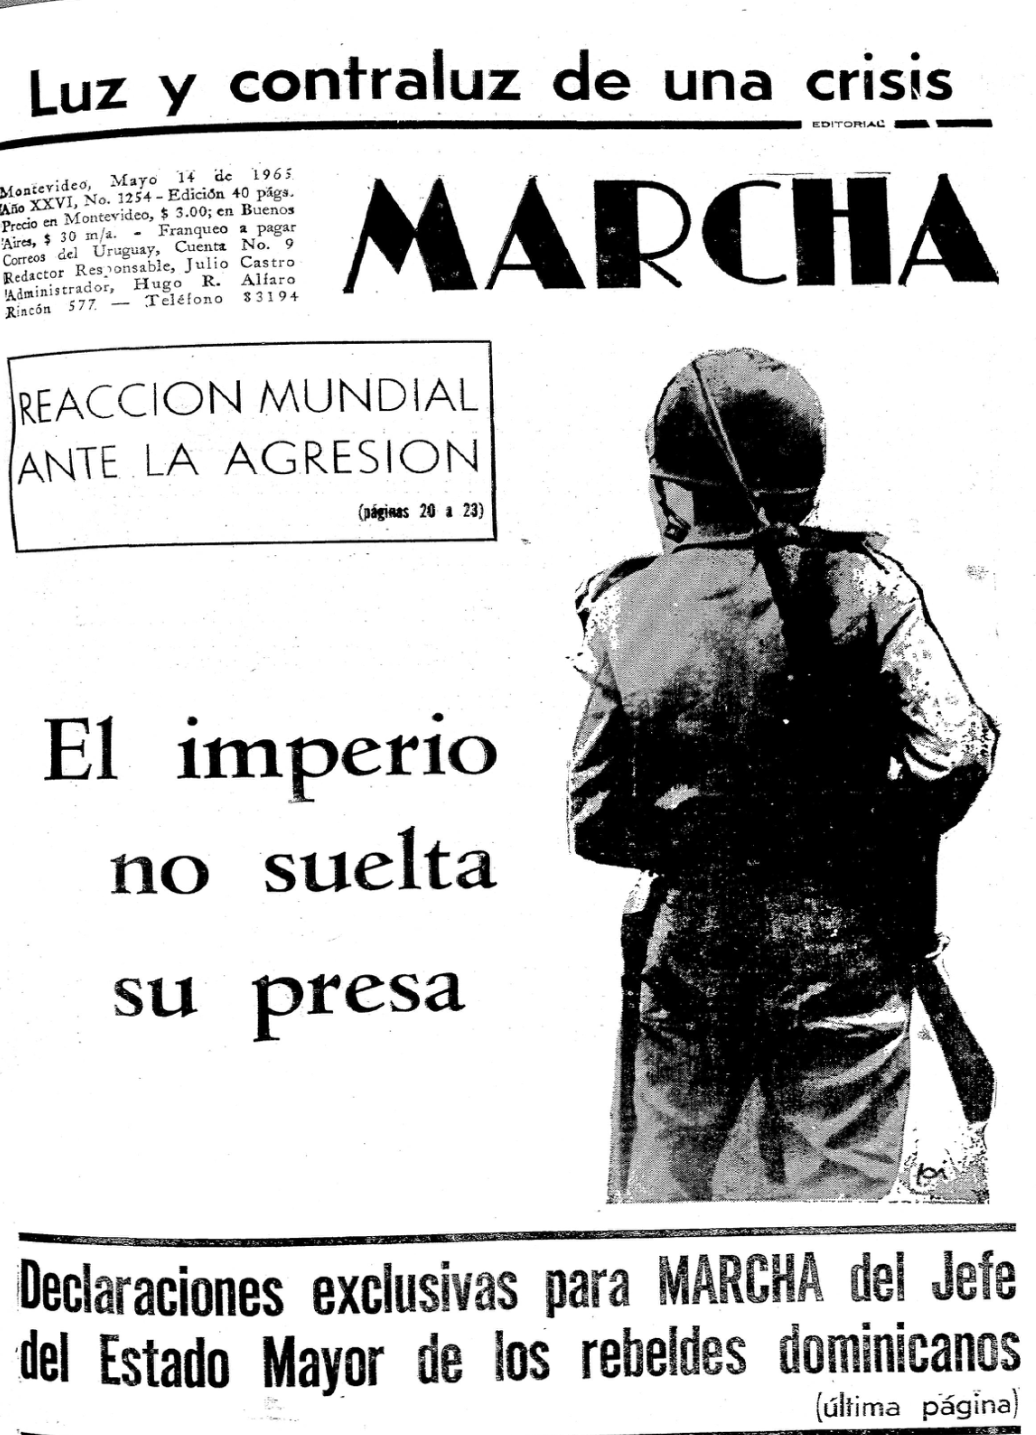 Uruguay y la invasión norteamericana de 1965 a República Dominicana (2 de 2)